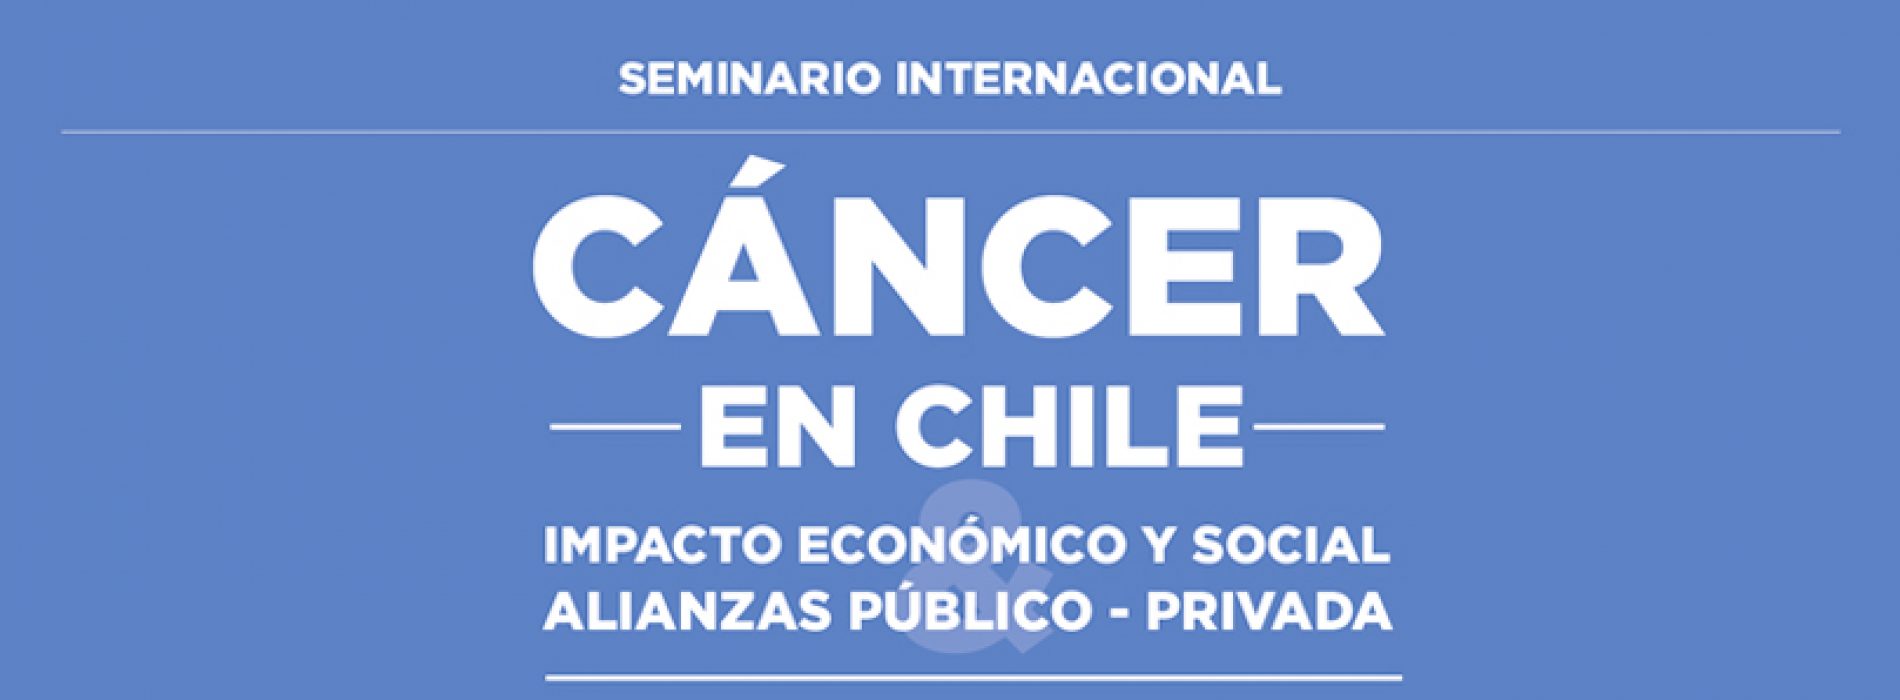 Seminario Cáncer en Chile 2018: Impacto económico y social & alianzas público-privada